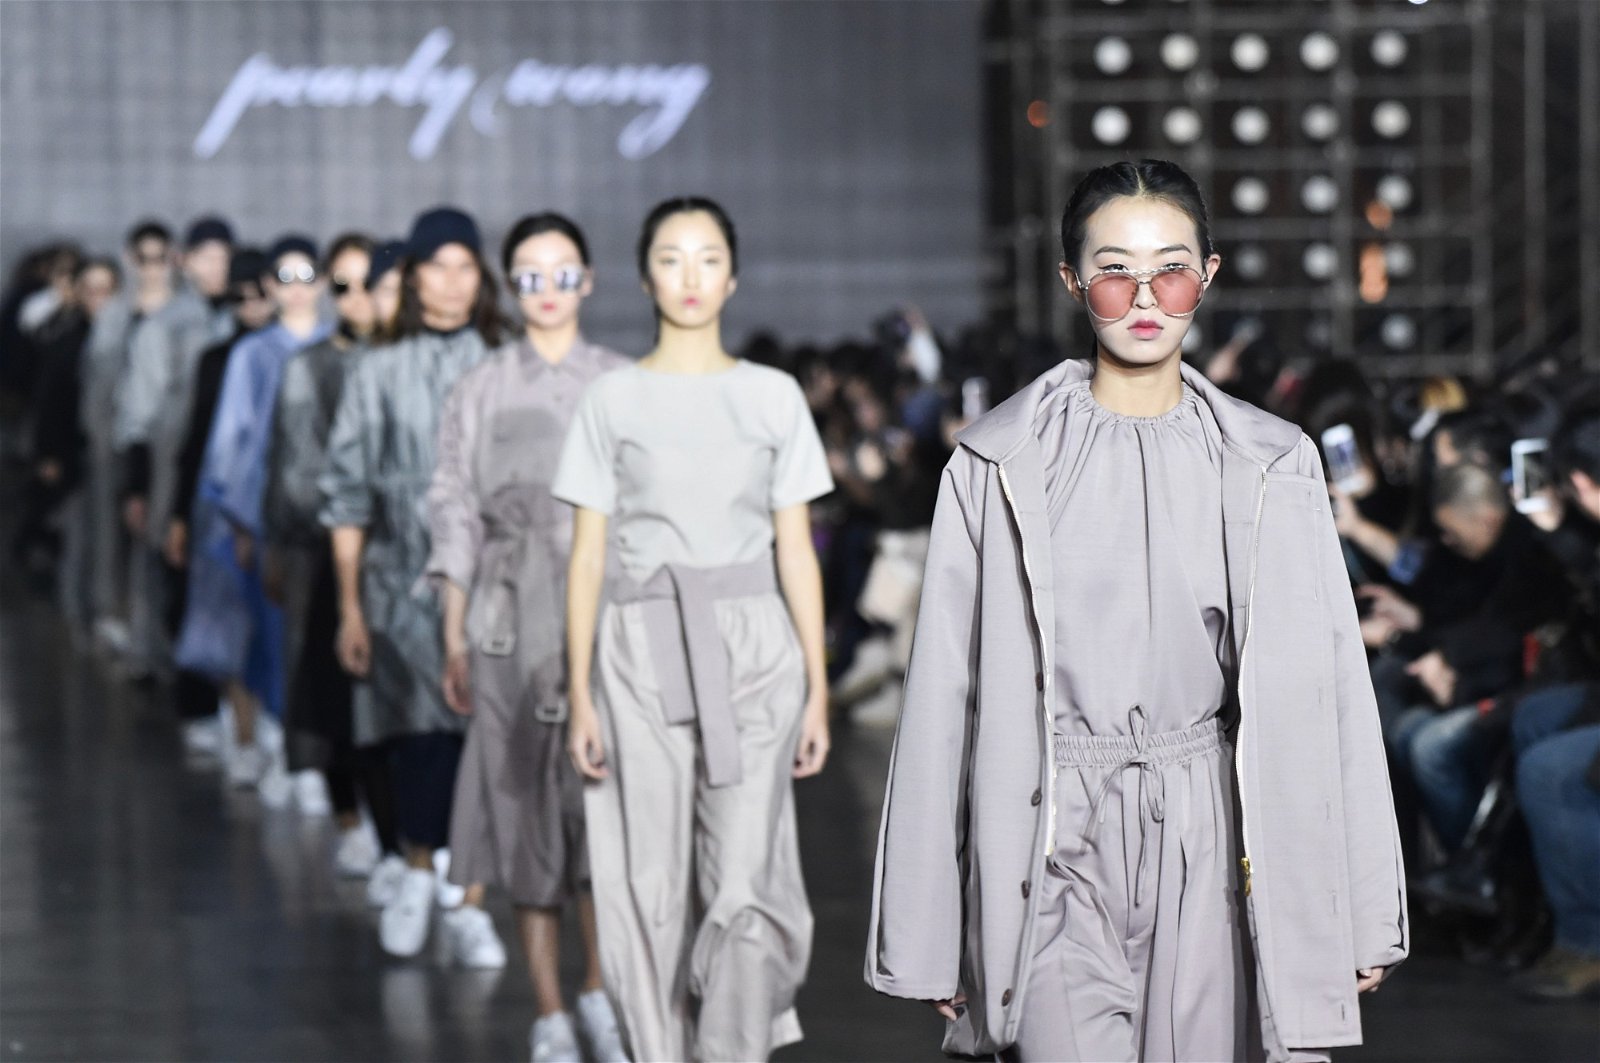 多功能、跨越性别是黄紫君同名品牌Pearly Wong的品牌DNA，她认为，速食时装只是一种时下的风潮，紧守定位才是永续之道。图为她在今年哈尔滨时装周呈现的作品。